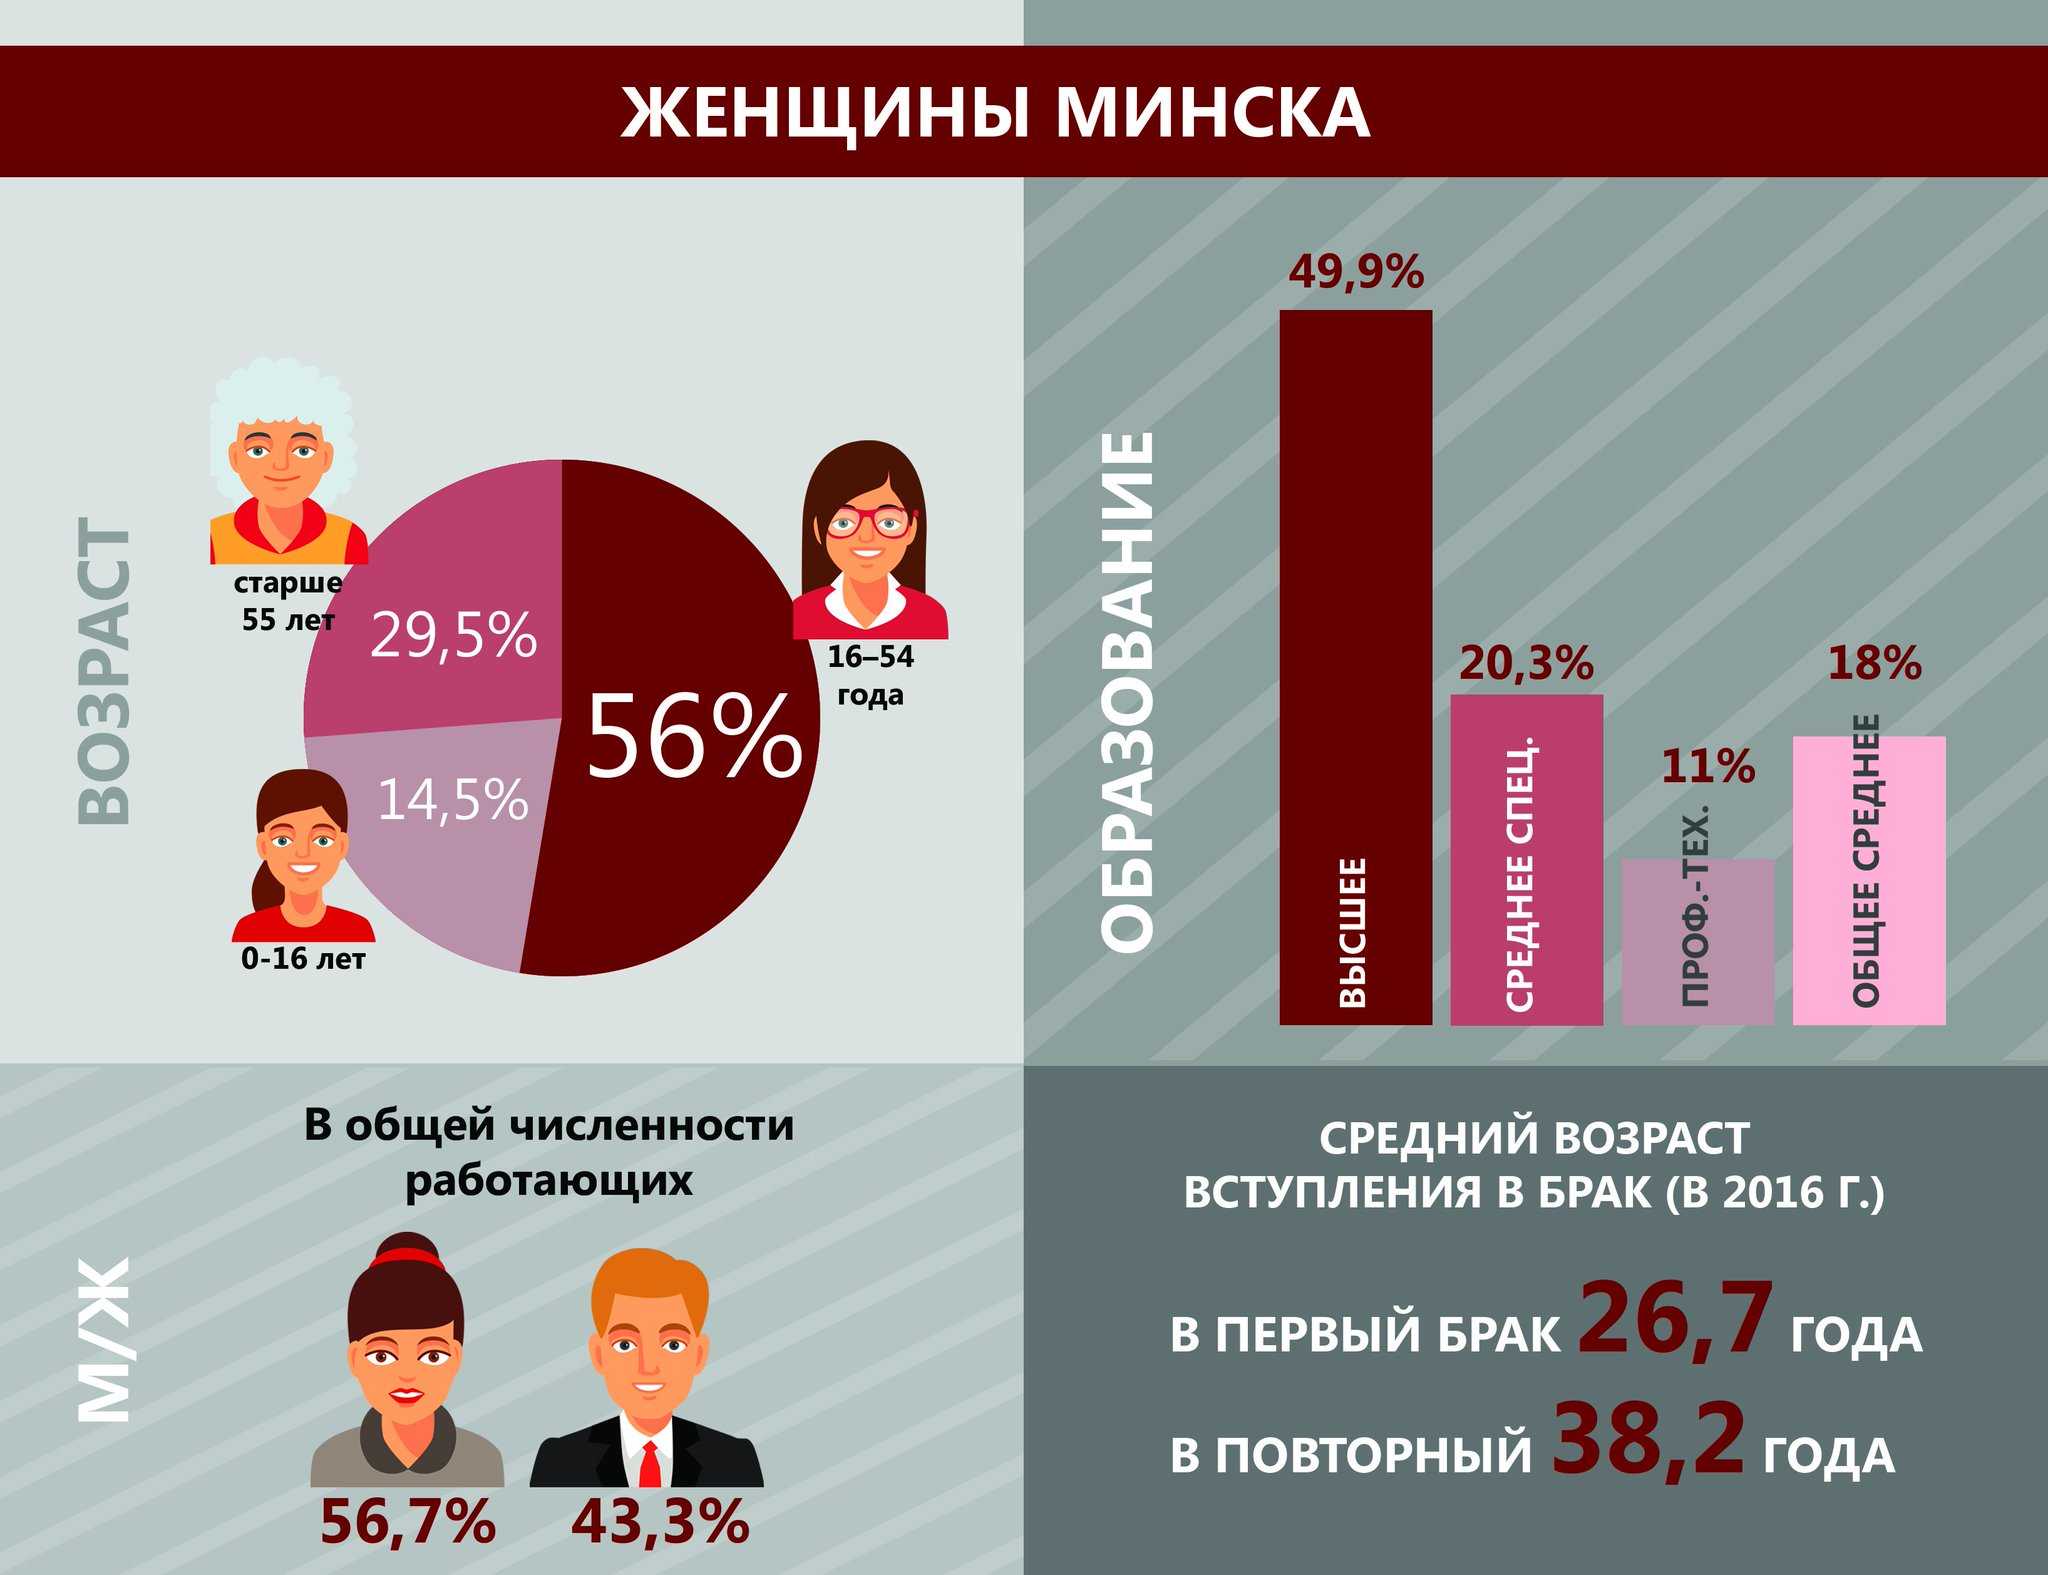 Средний возраст женщин и мужчин в россии. Статистика мужчин и женщин в России по возрастам. Ранние браки инфографика. Женщина инфографика. Соотношение мужчин и женщин по возрасту.